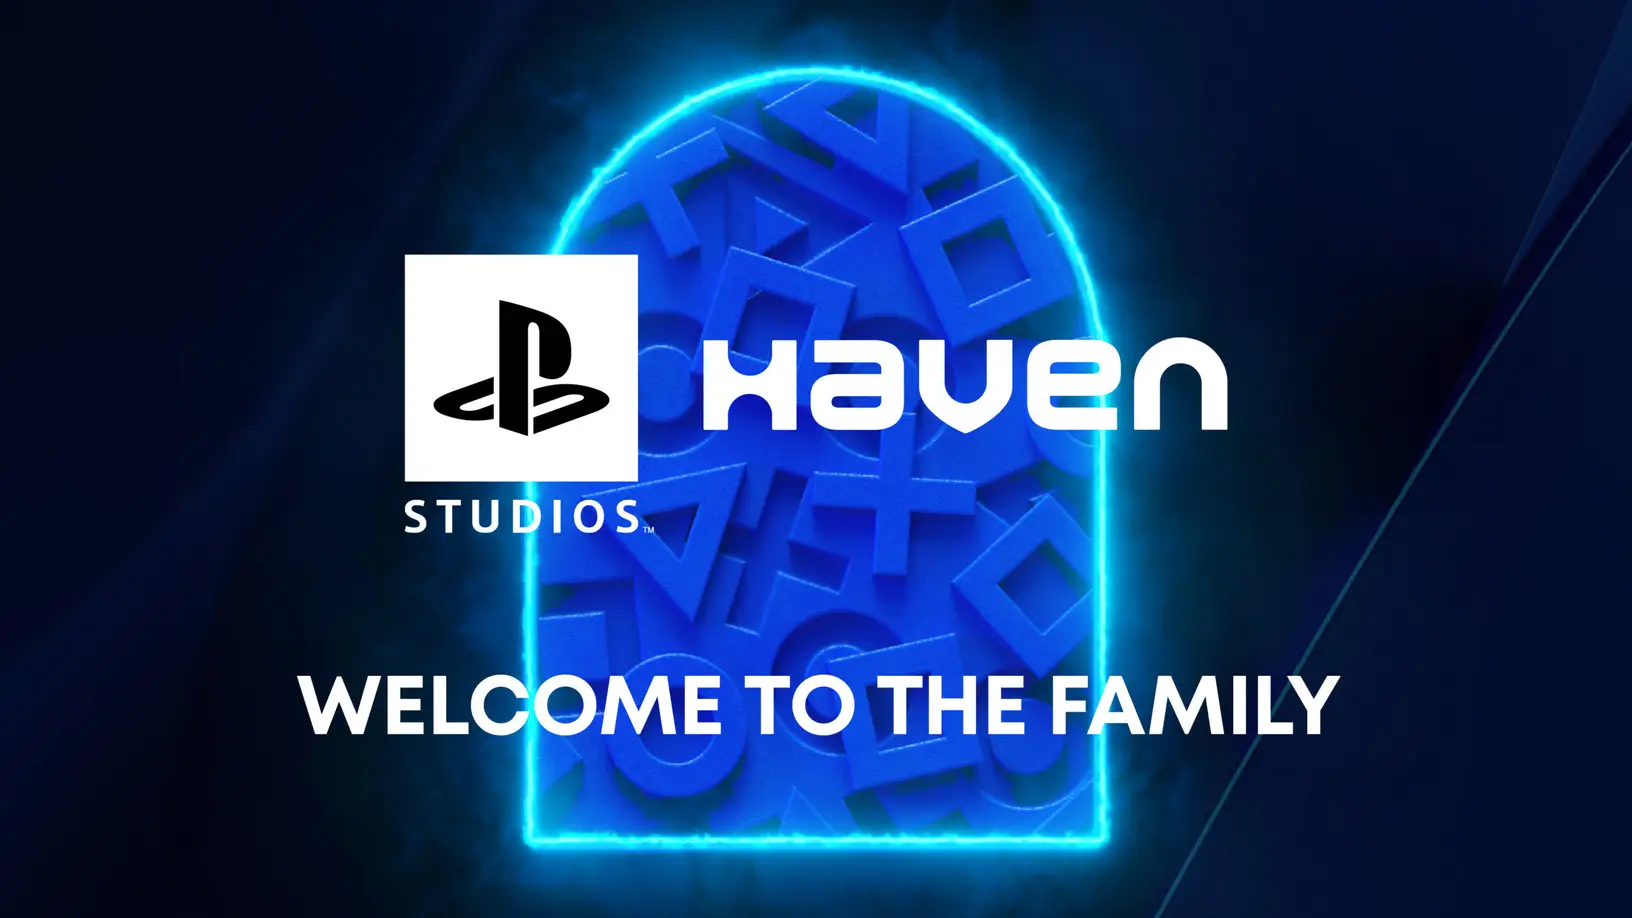 PlayStation Haven Studios